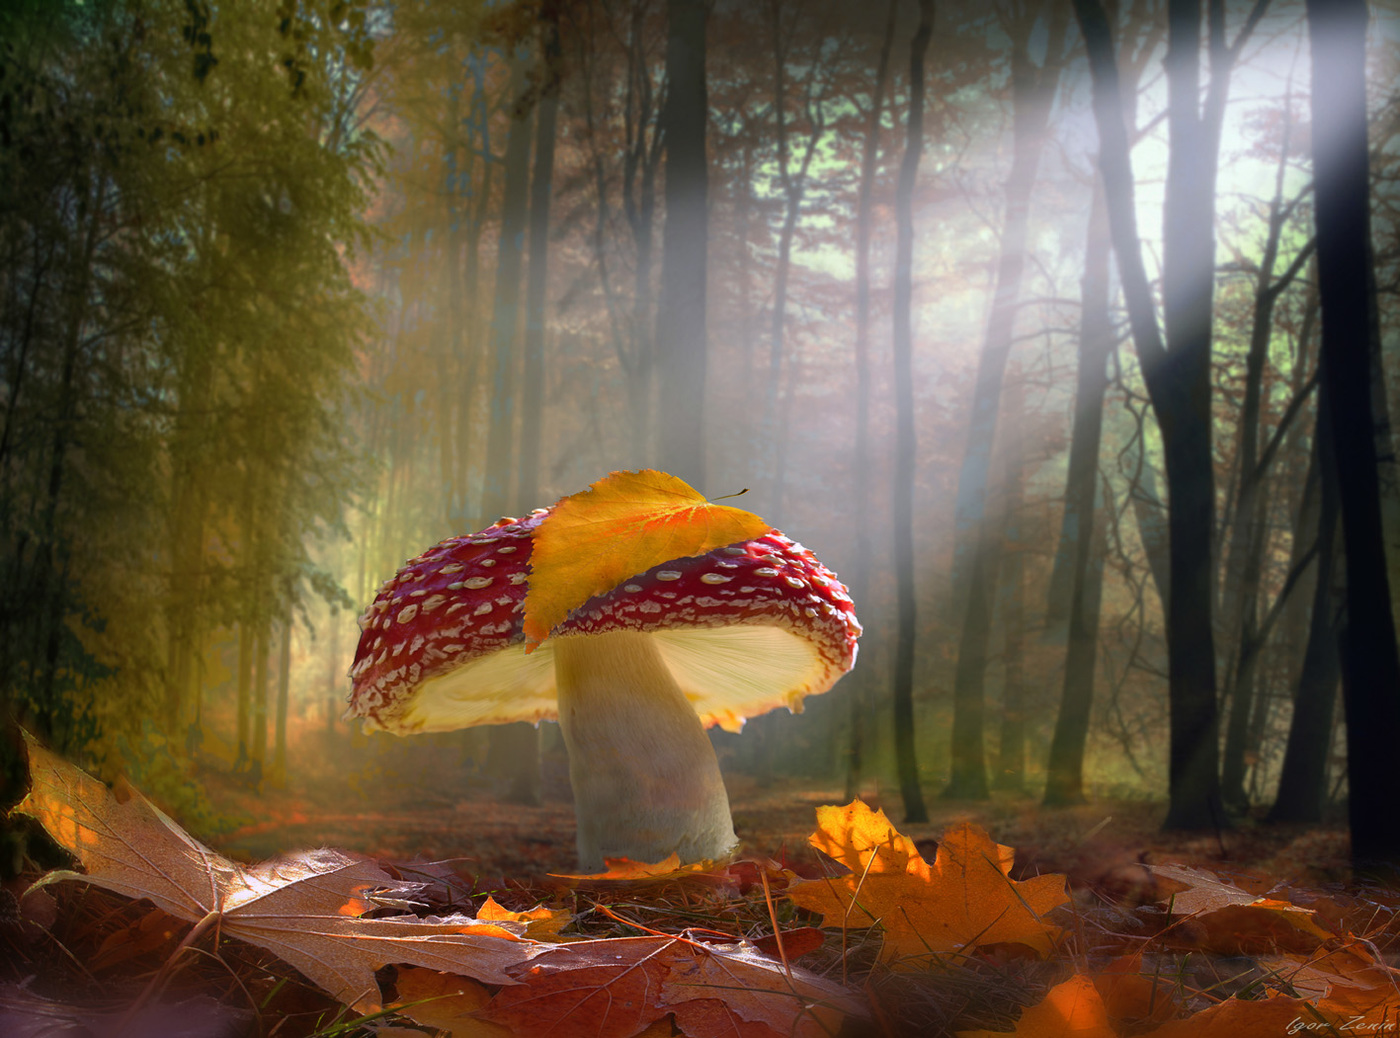 Mushroom Photo: Amanita muSango